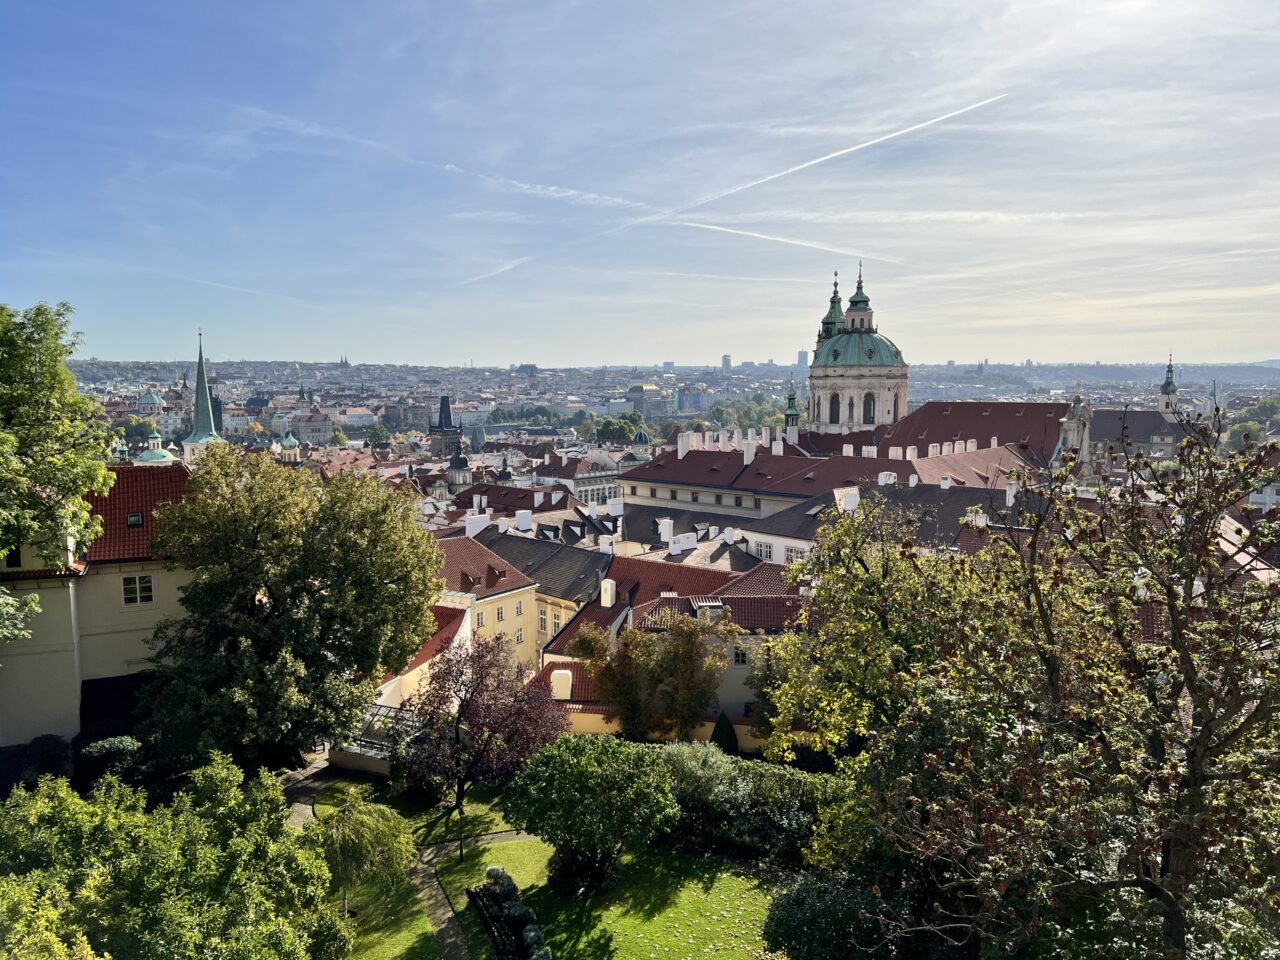 Utsiktbilde over by med en kirke i sentrum. Foto